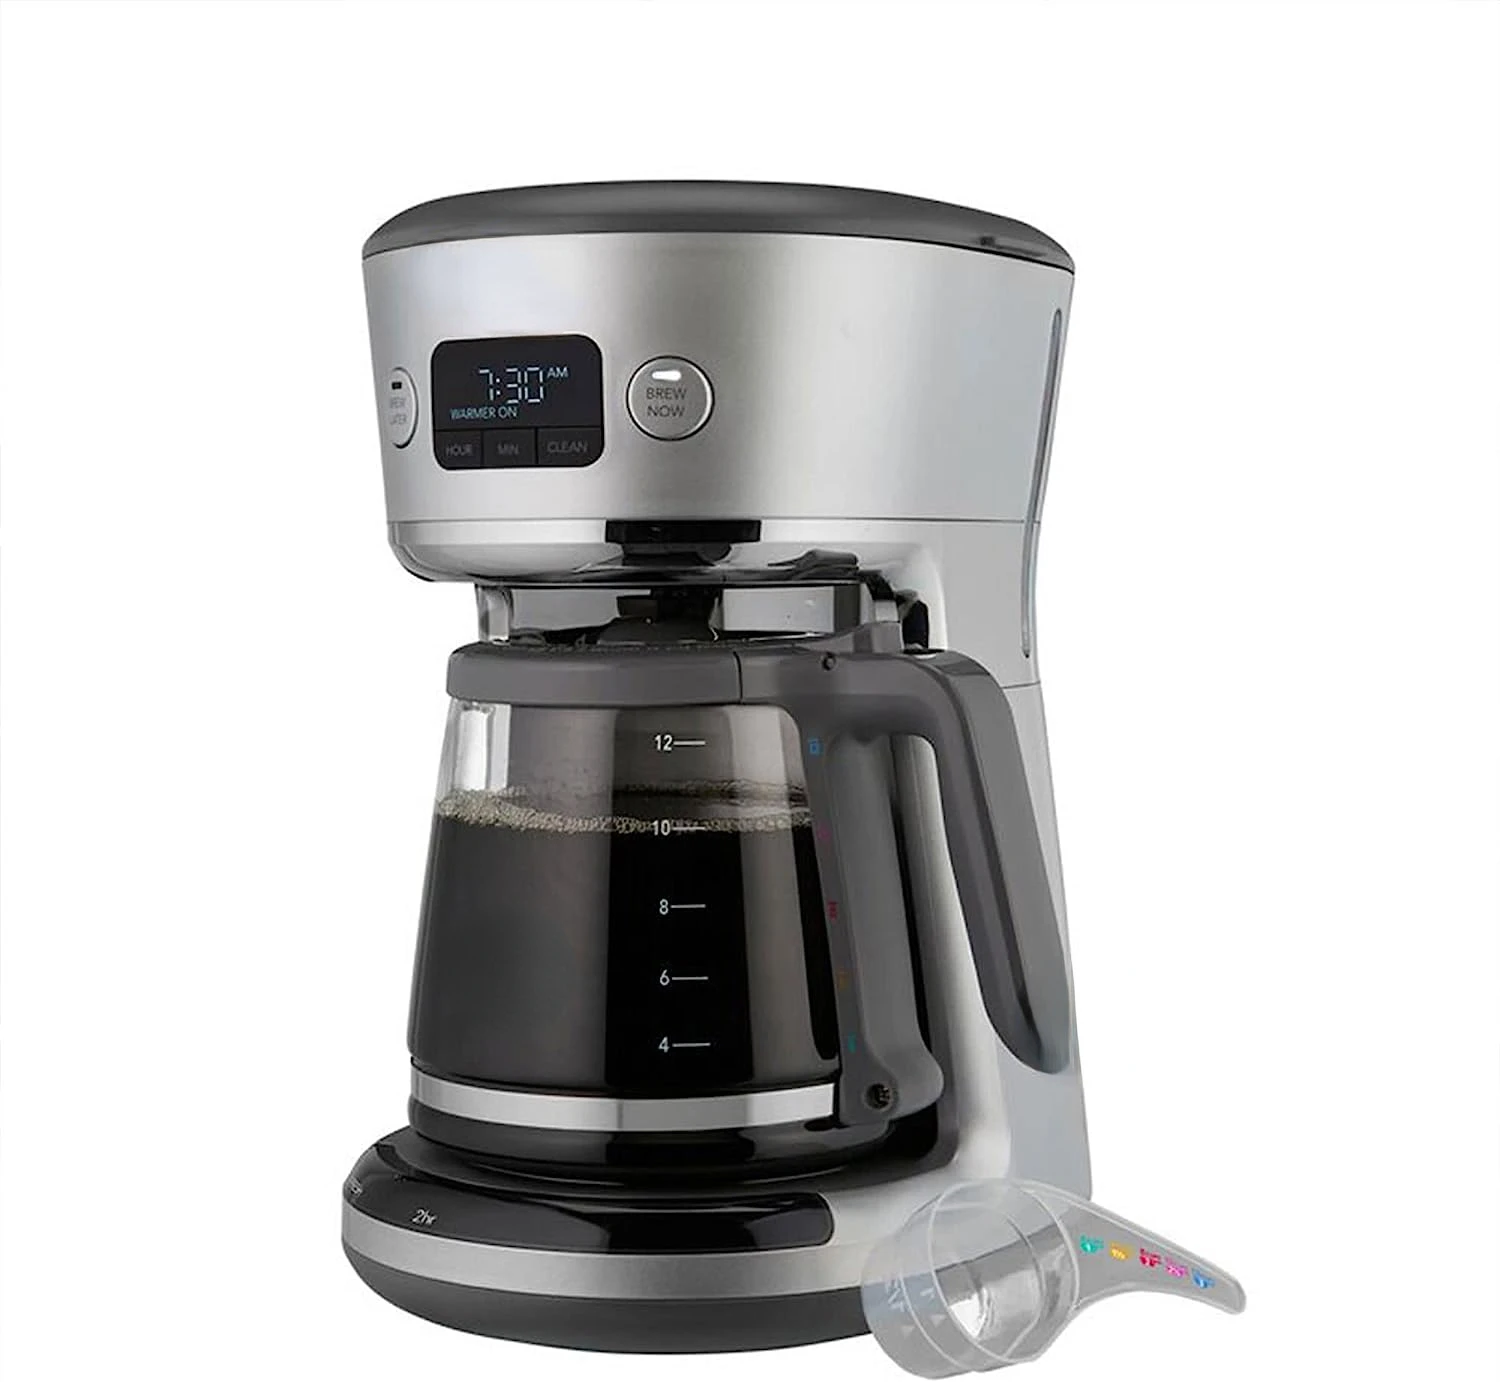 Кофе 31160393 Easy Measure, программируемая цифровая кофеварка на 12 чашек со встроенной фильтрацией и мерной ложкой, Sil1